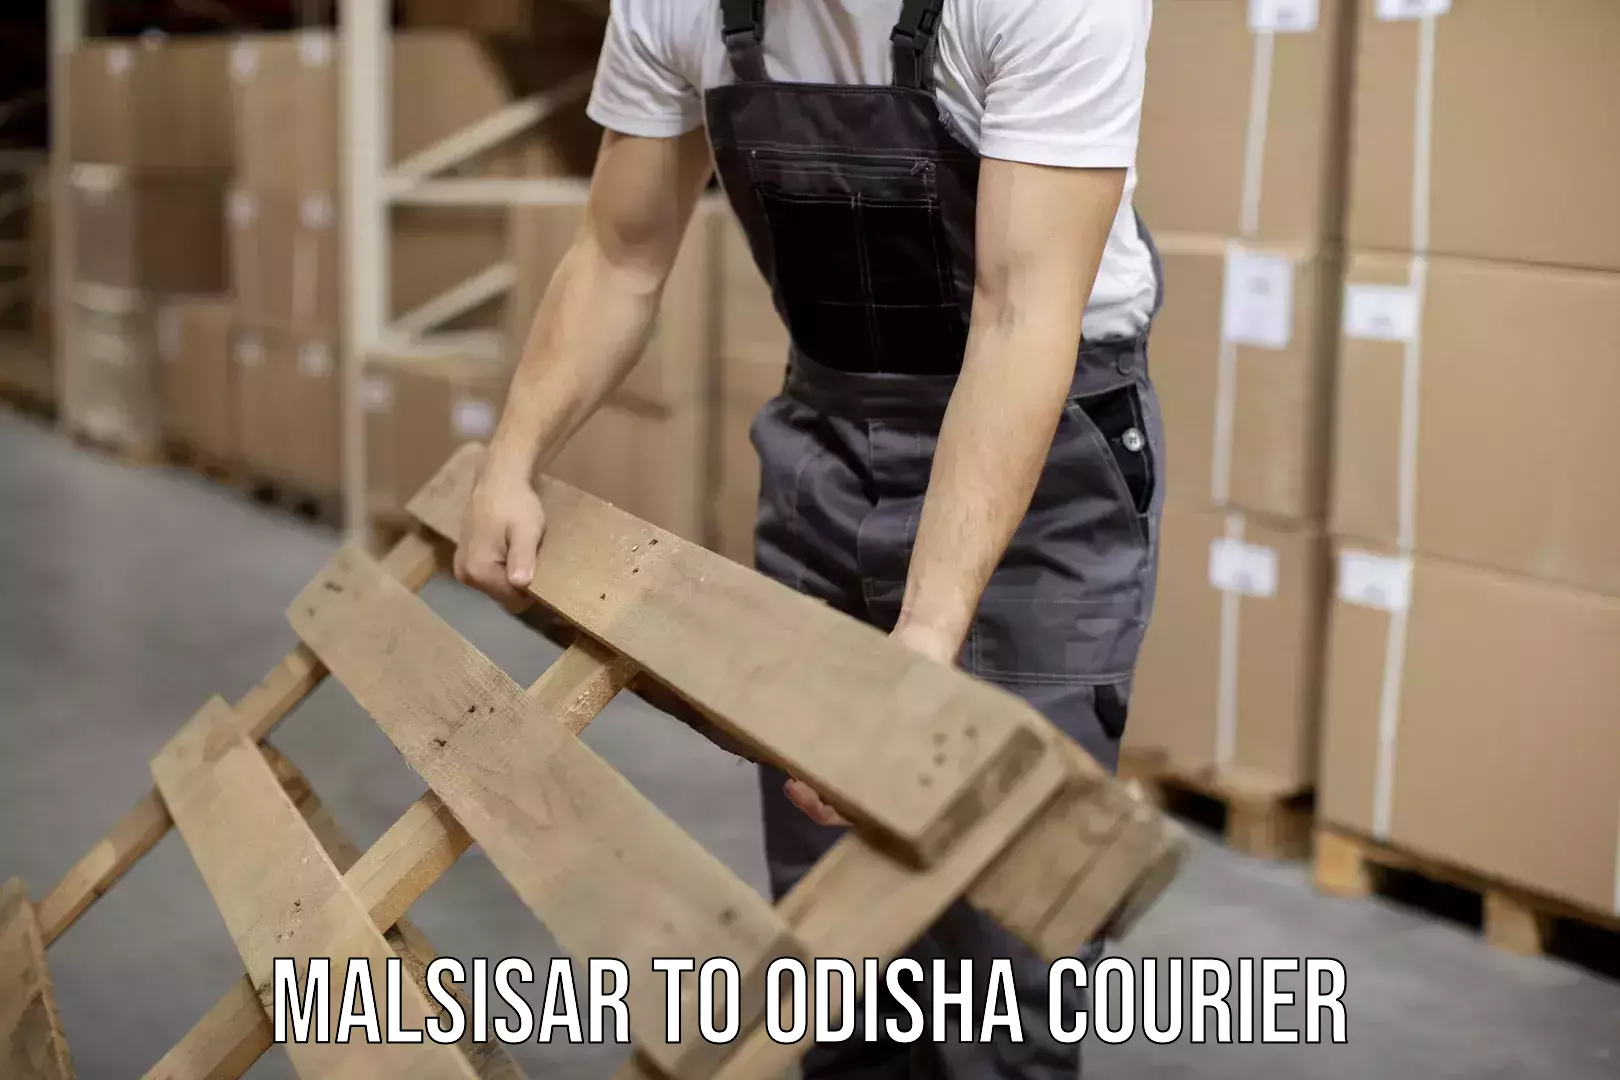 Courier service comparison Malsisar to Malkangiri